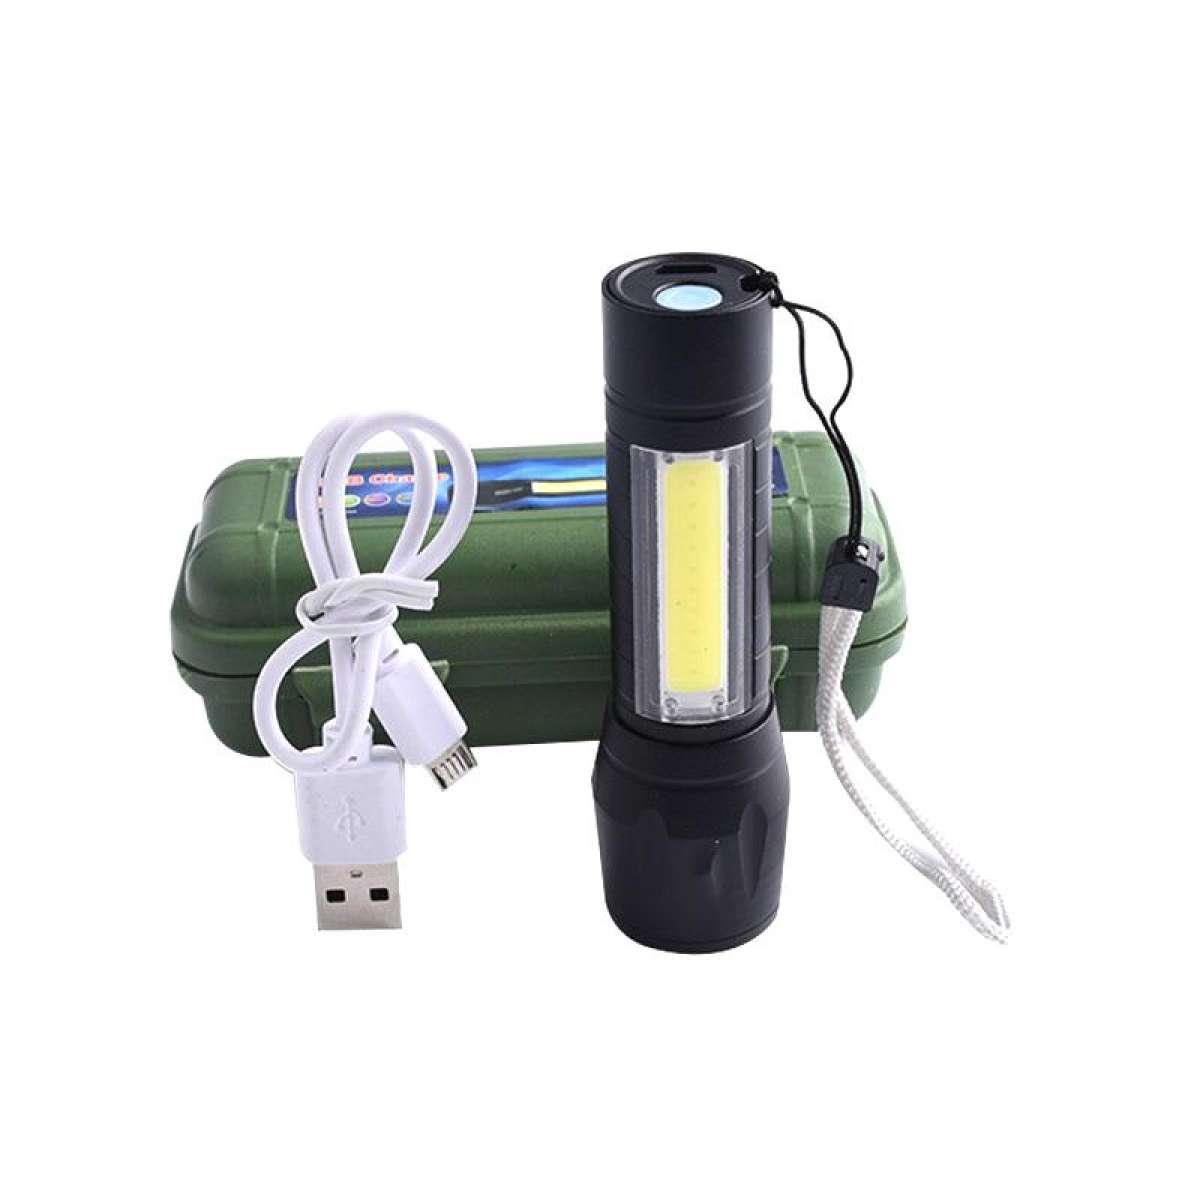 ไฟฉาย ไฟฉายแรงสูง ไฟฉายความสว่างสูง ชาร์จแบตได้ ปรับได้ 3 รูปแบบ ส่องได้ไกล กันน้ำ กันกระแทก LED Flashlight USB Charger รุ่น APL-511